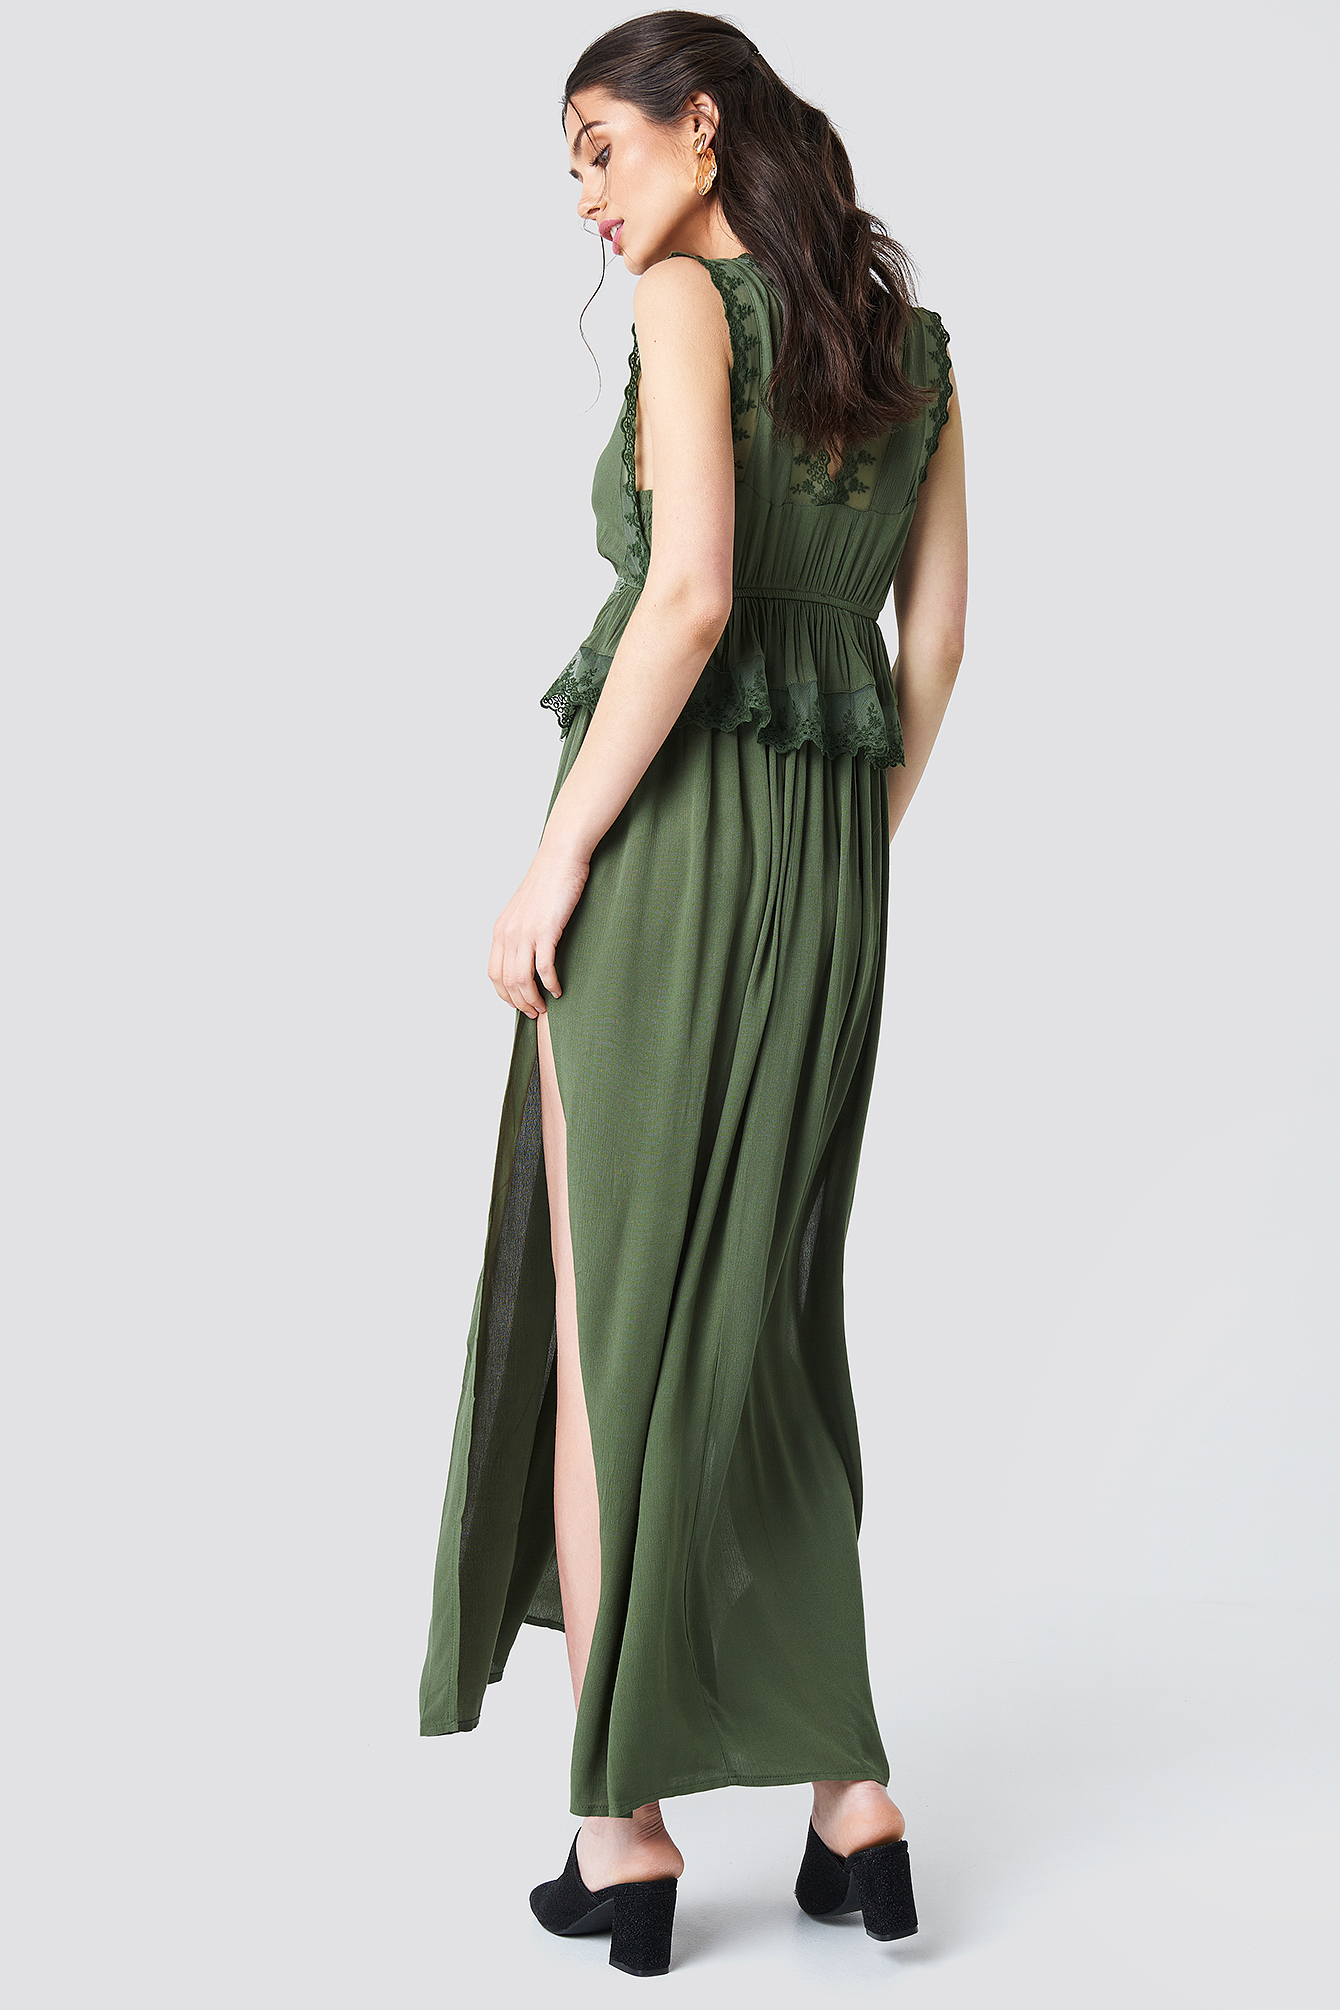 Green Slits Maxi Dress